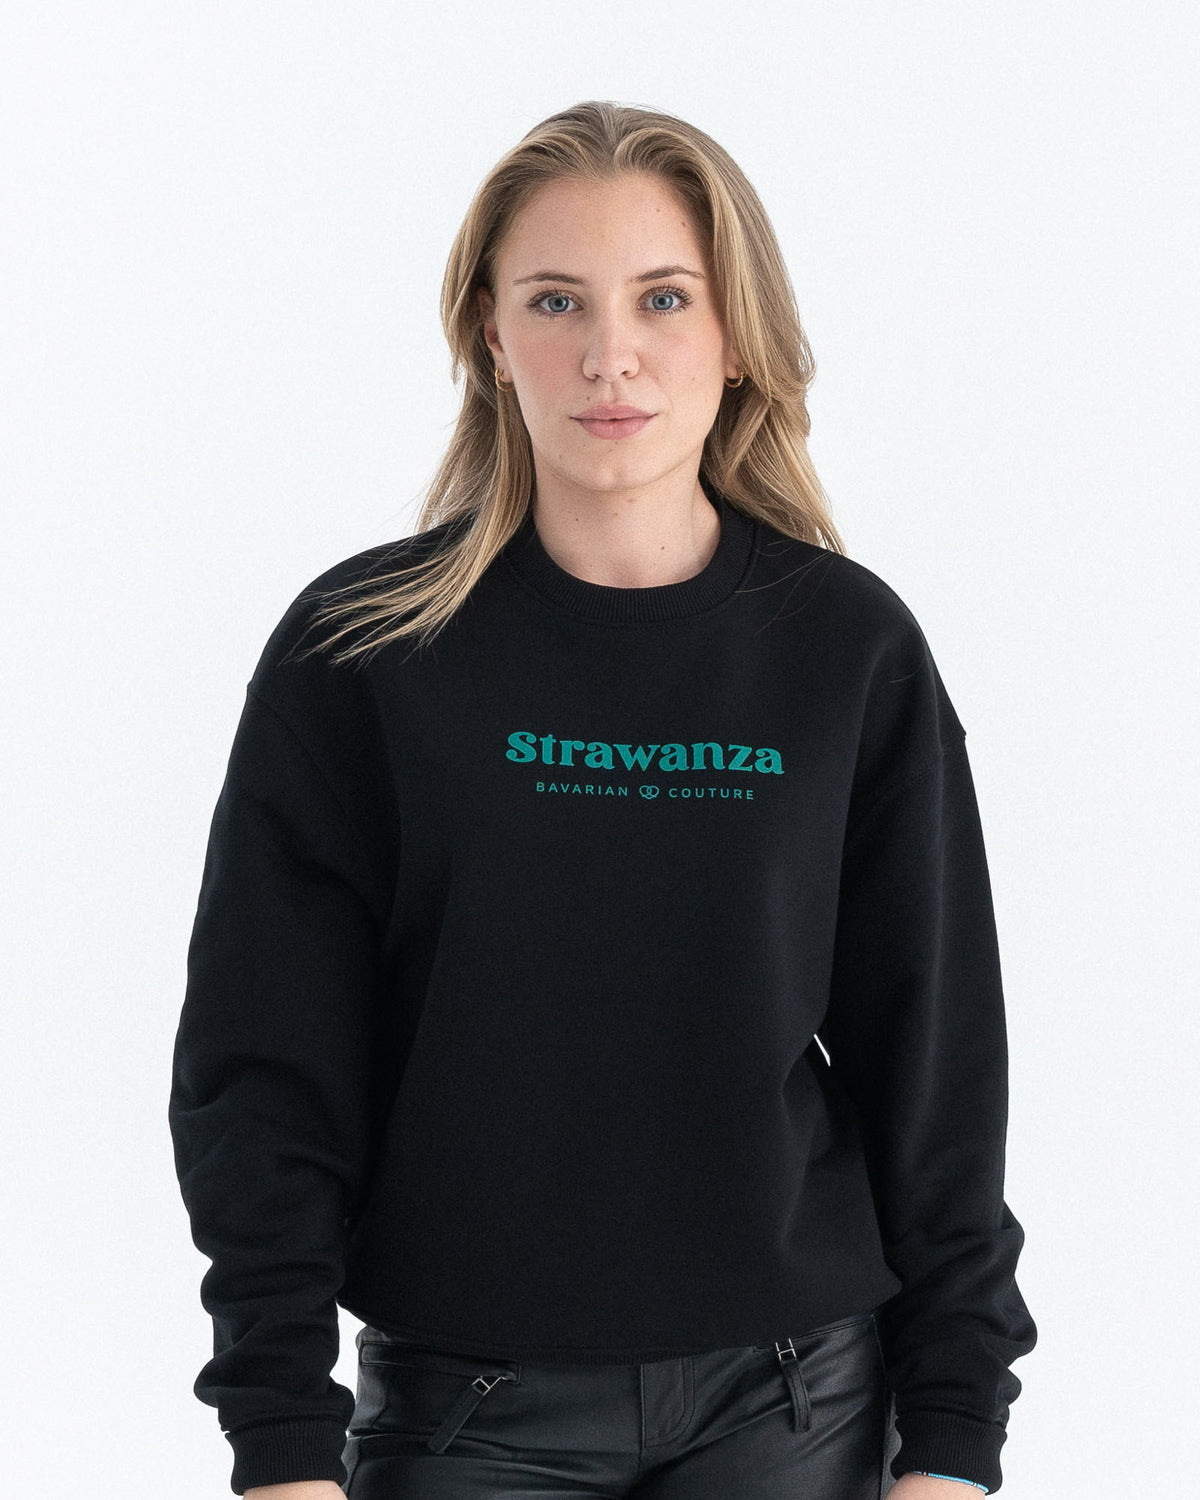 Ein weibliches Model trägt einen schwarzen Sweater mit einem dunkelgrünen "Strawanza" und "BAVARIAN COUTURE" Schriftzug auf der Höhe der Brust.